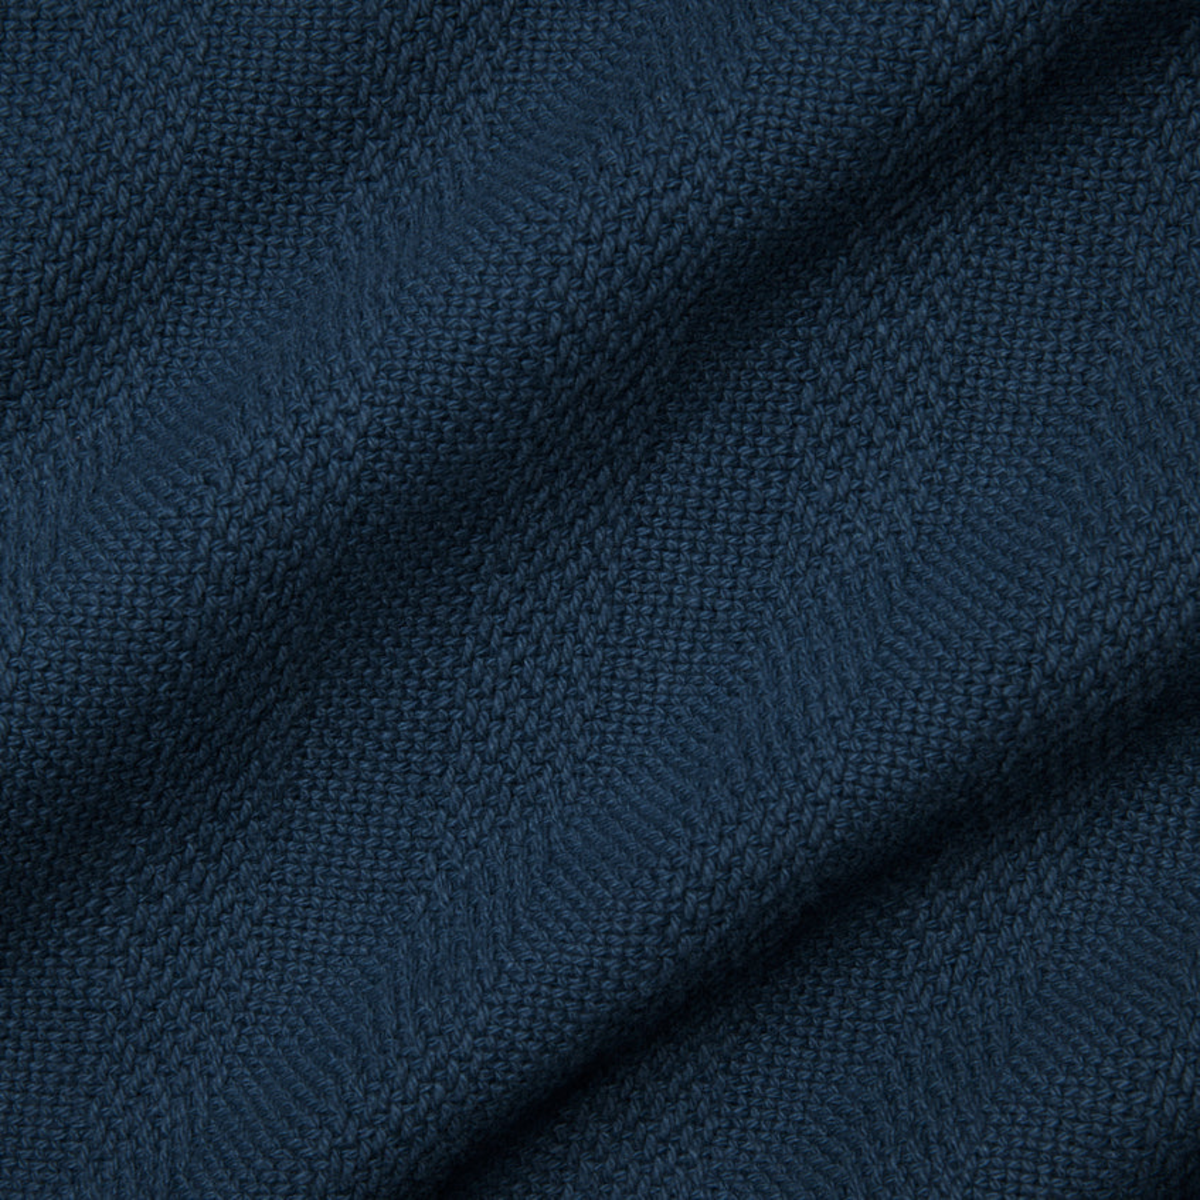 Swatch Sample of Sferra Tavira Blanket in Navy Color